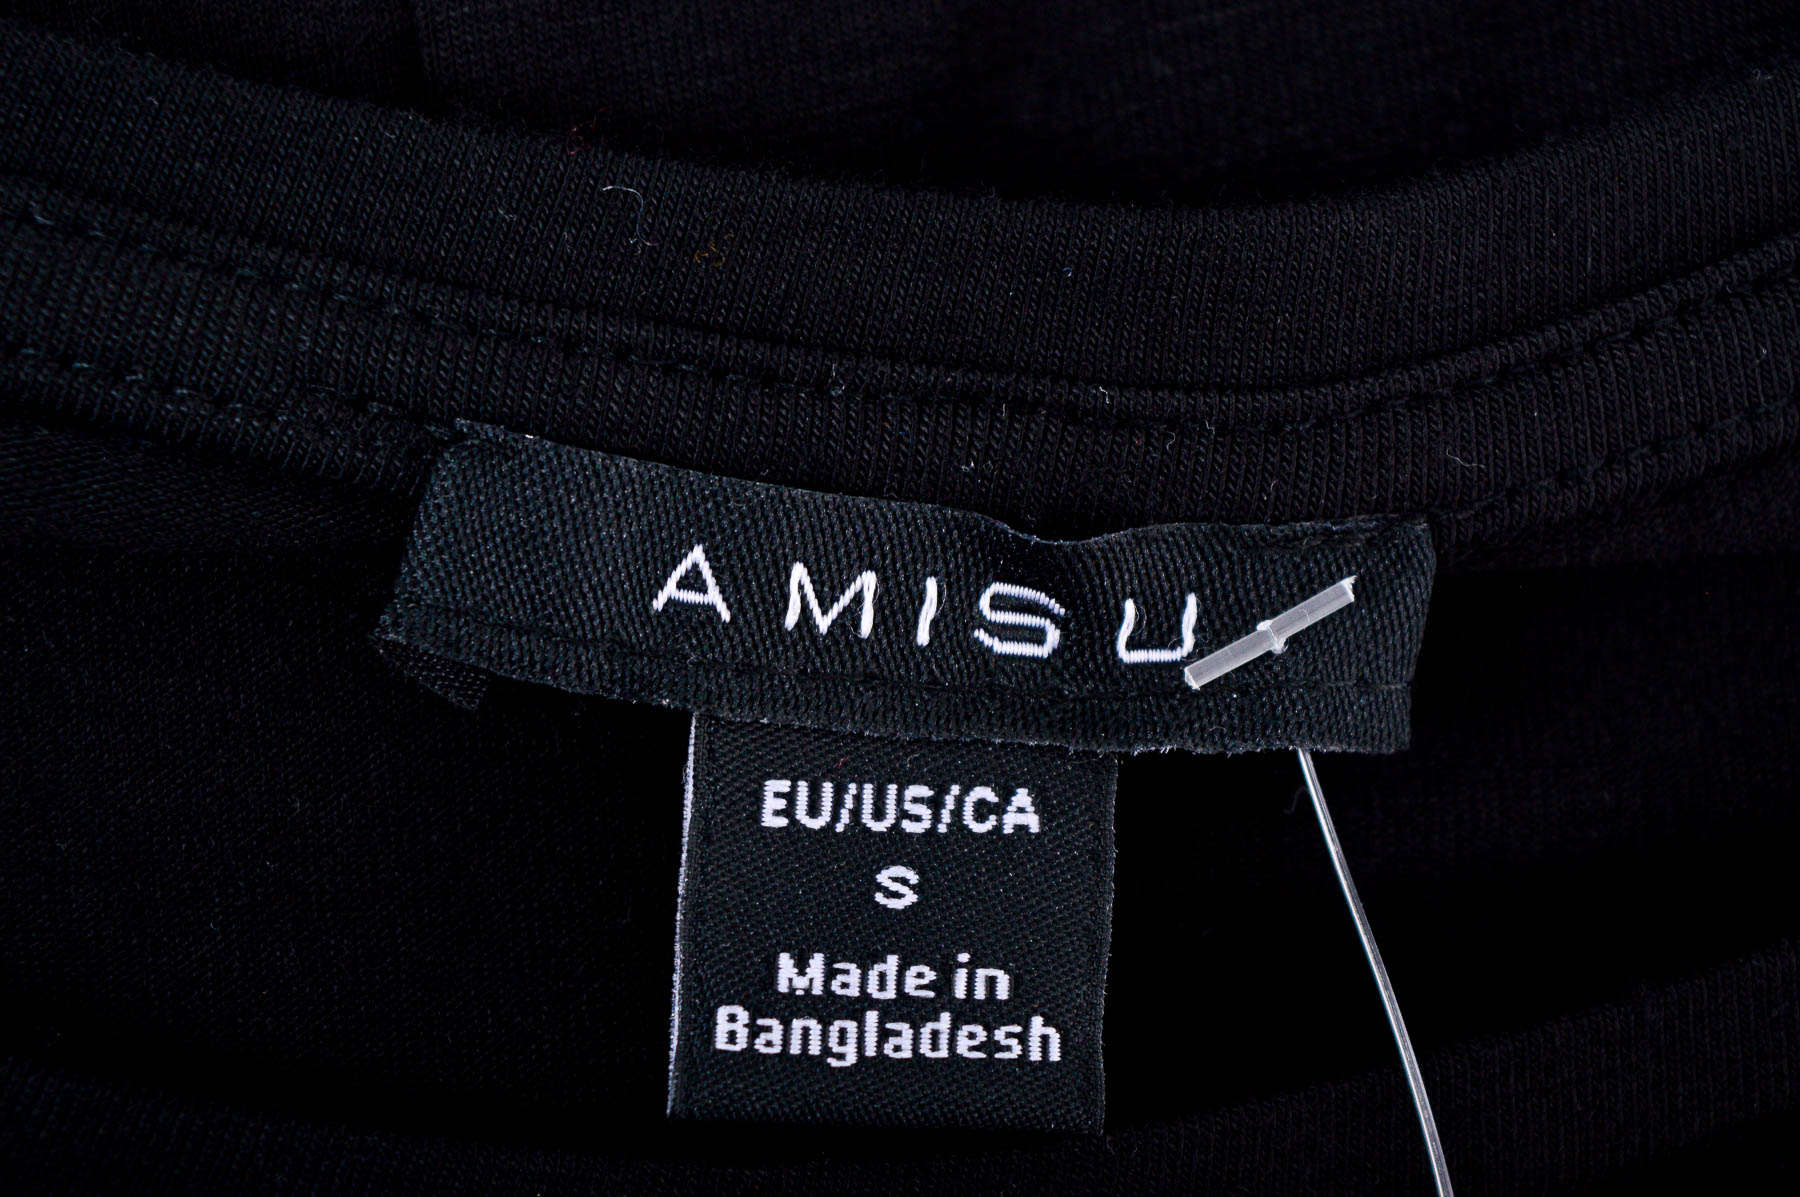 Tricou de damă - AMISU - 2